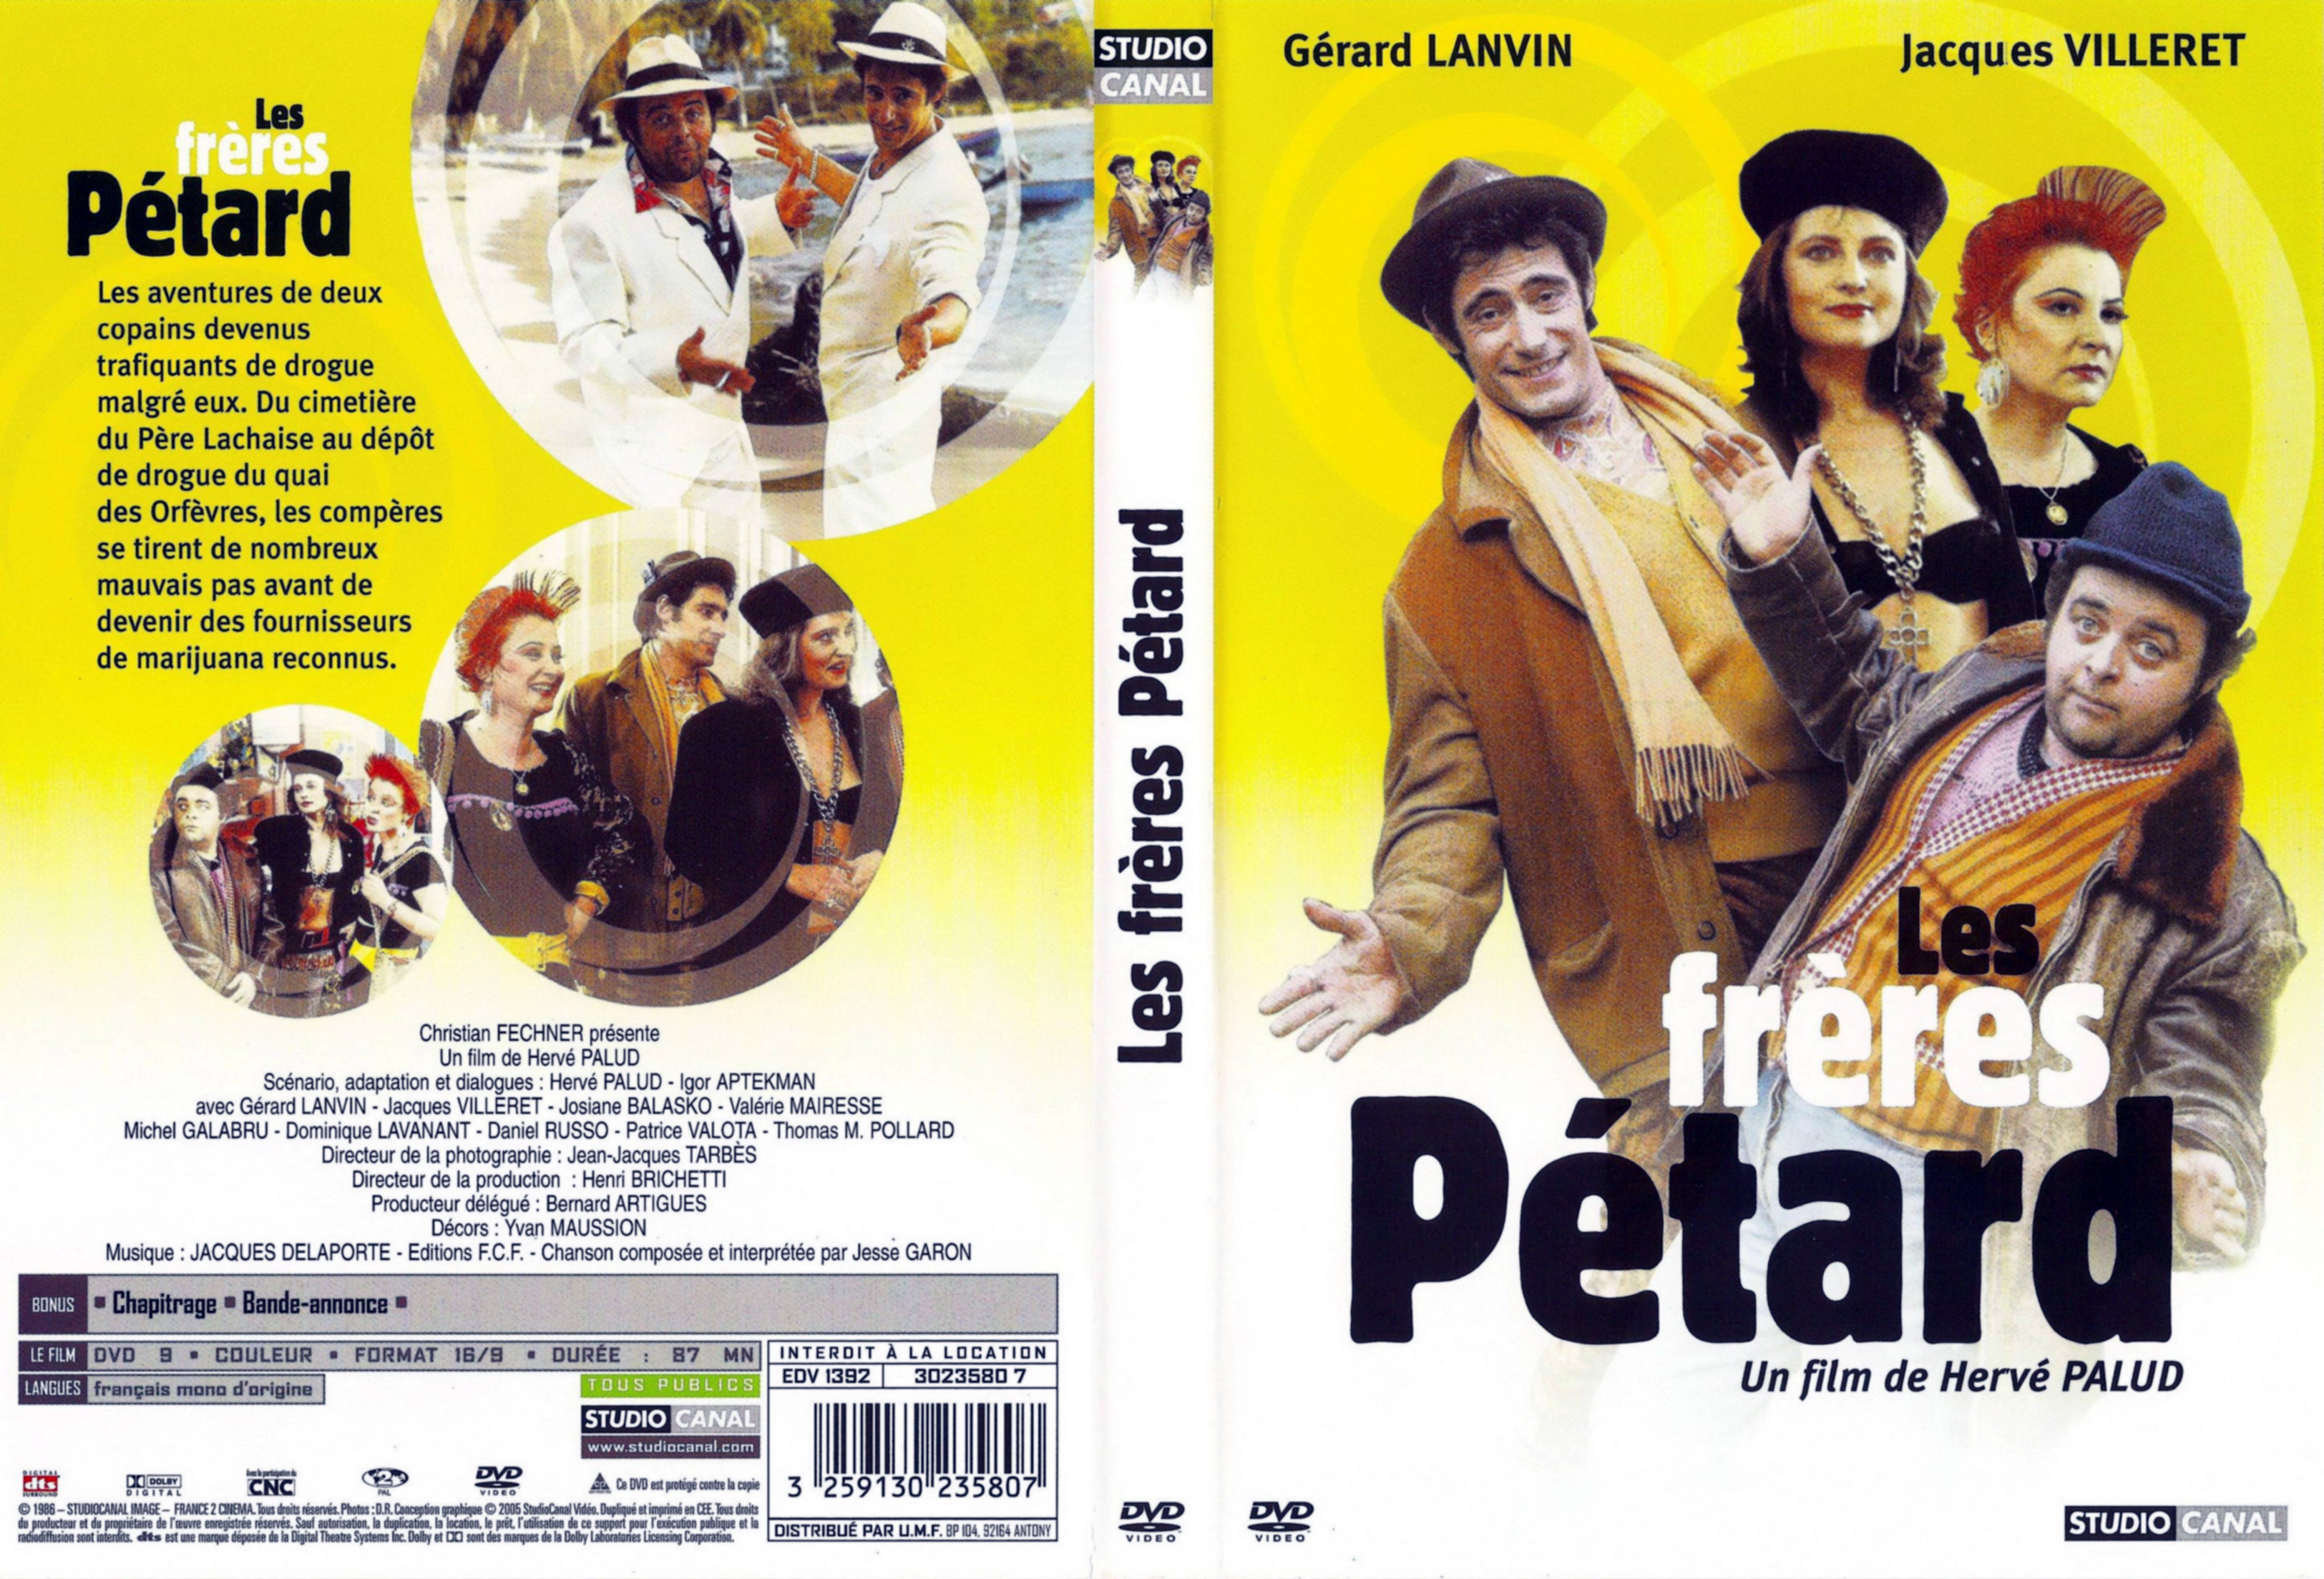 Jaquette DVD Les frres Ptard